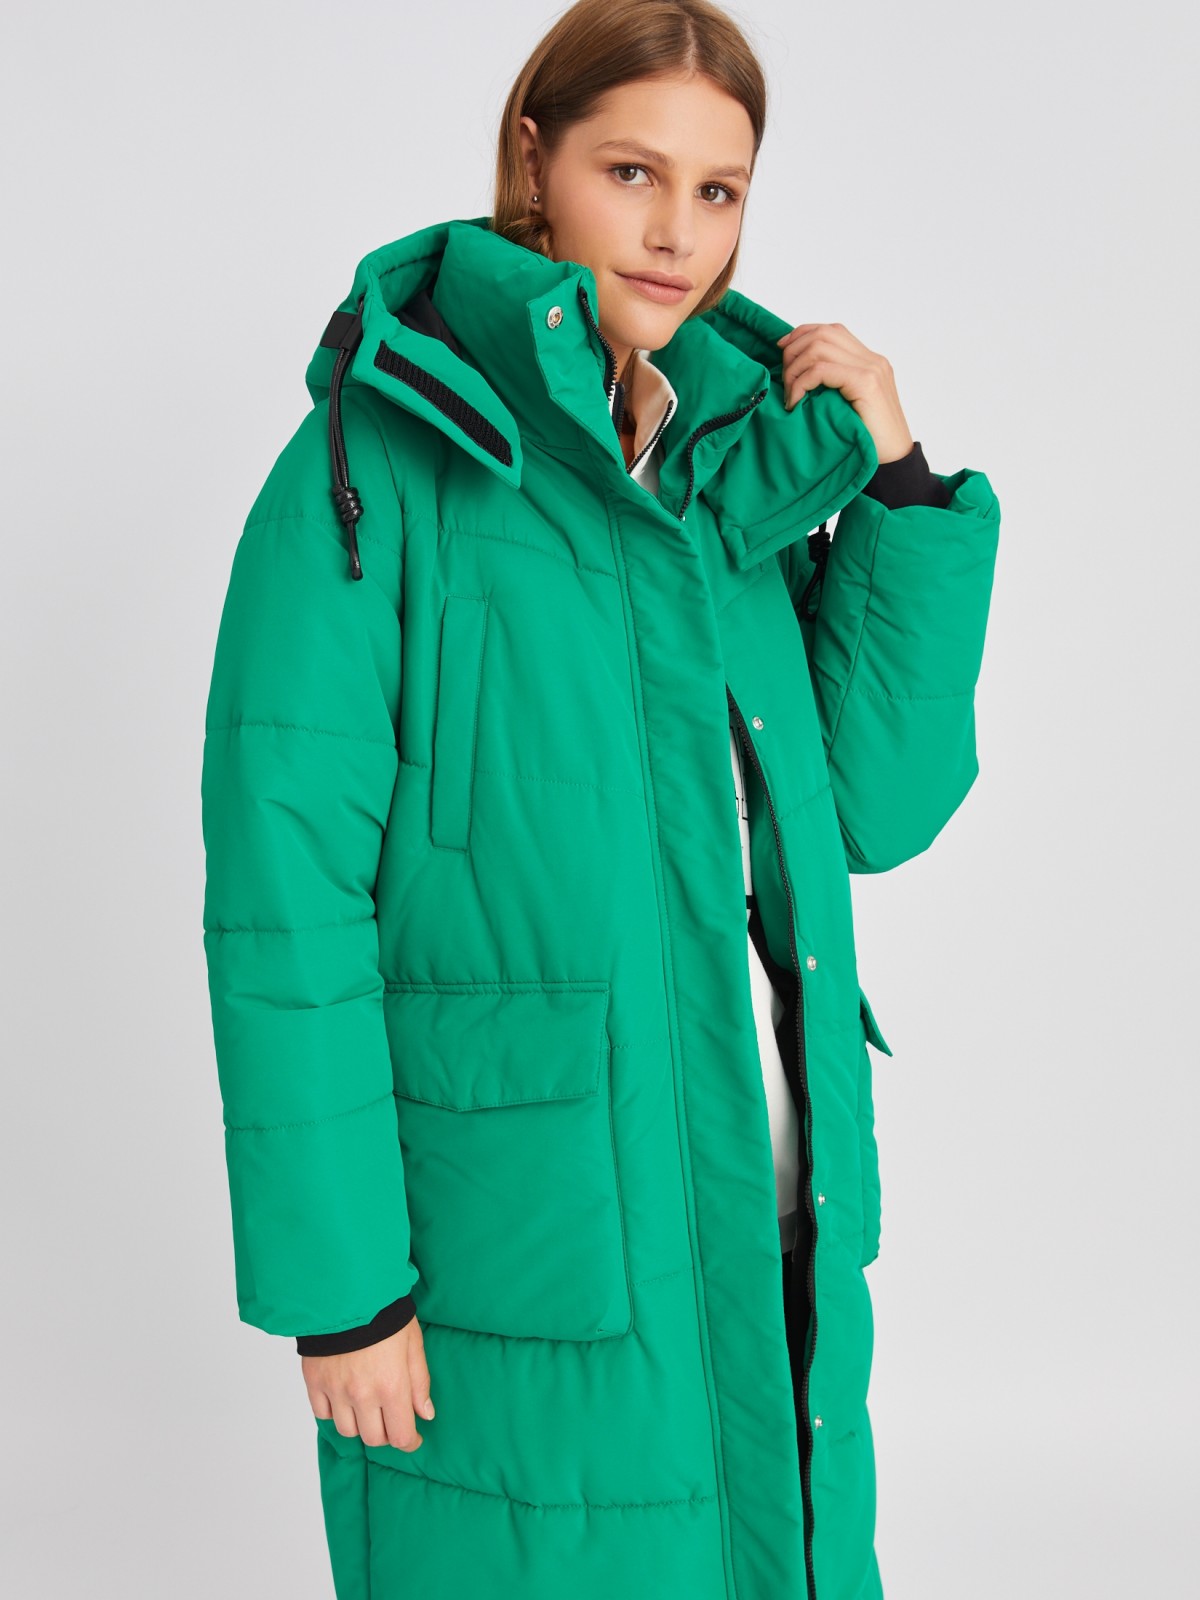 Тёплая куртка-пальто с капюшоном и внутренними манжетами